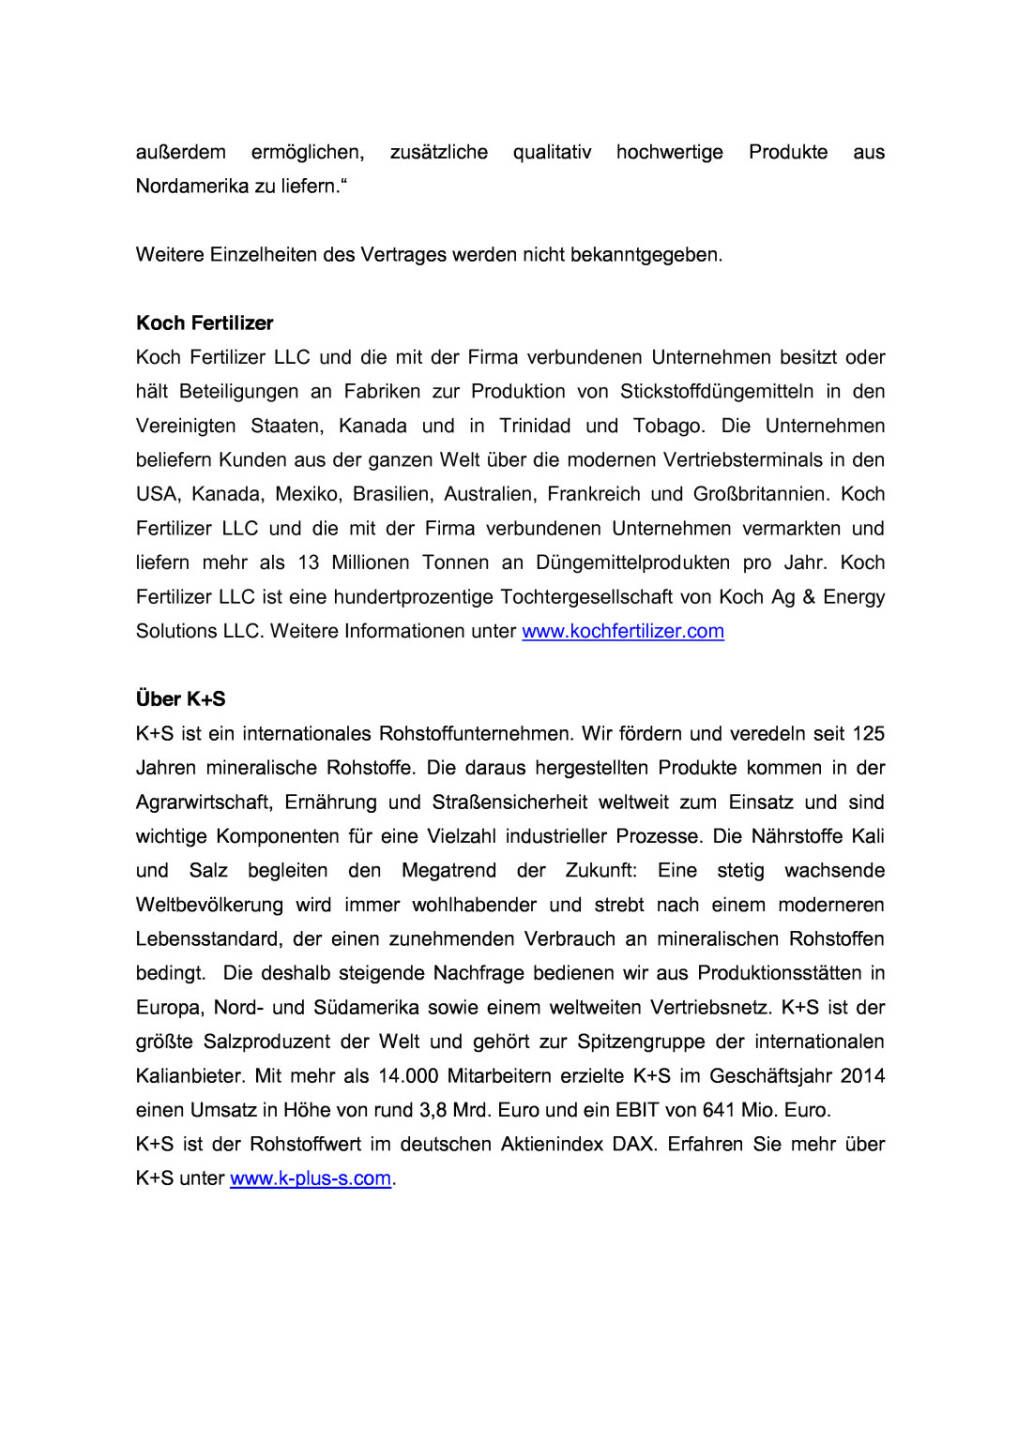 Koch Fertilizer und K+S unterzeichnen Vertrag, Seite 2/3, komplettes Dokument unter http://boerse-social.com/static/uploads/file_294_koch_fertilizer_und_ks_unterzeichnen_vertrag.pdf